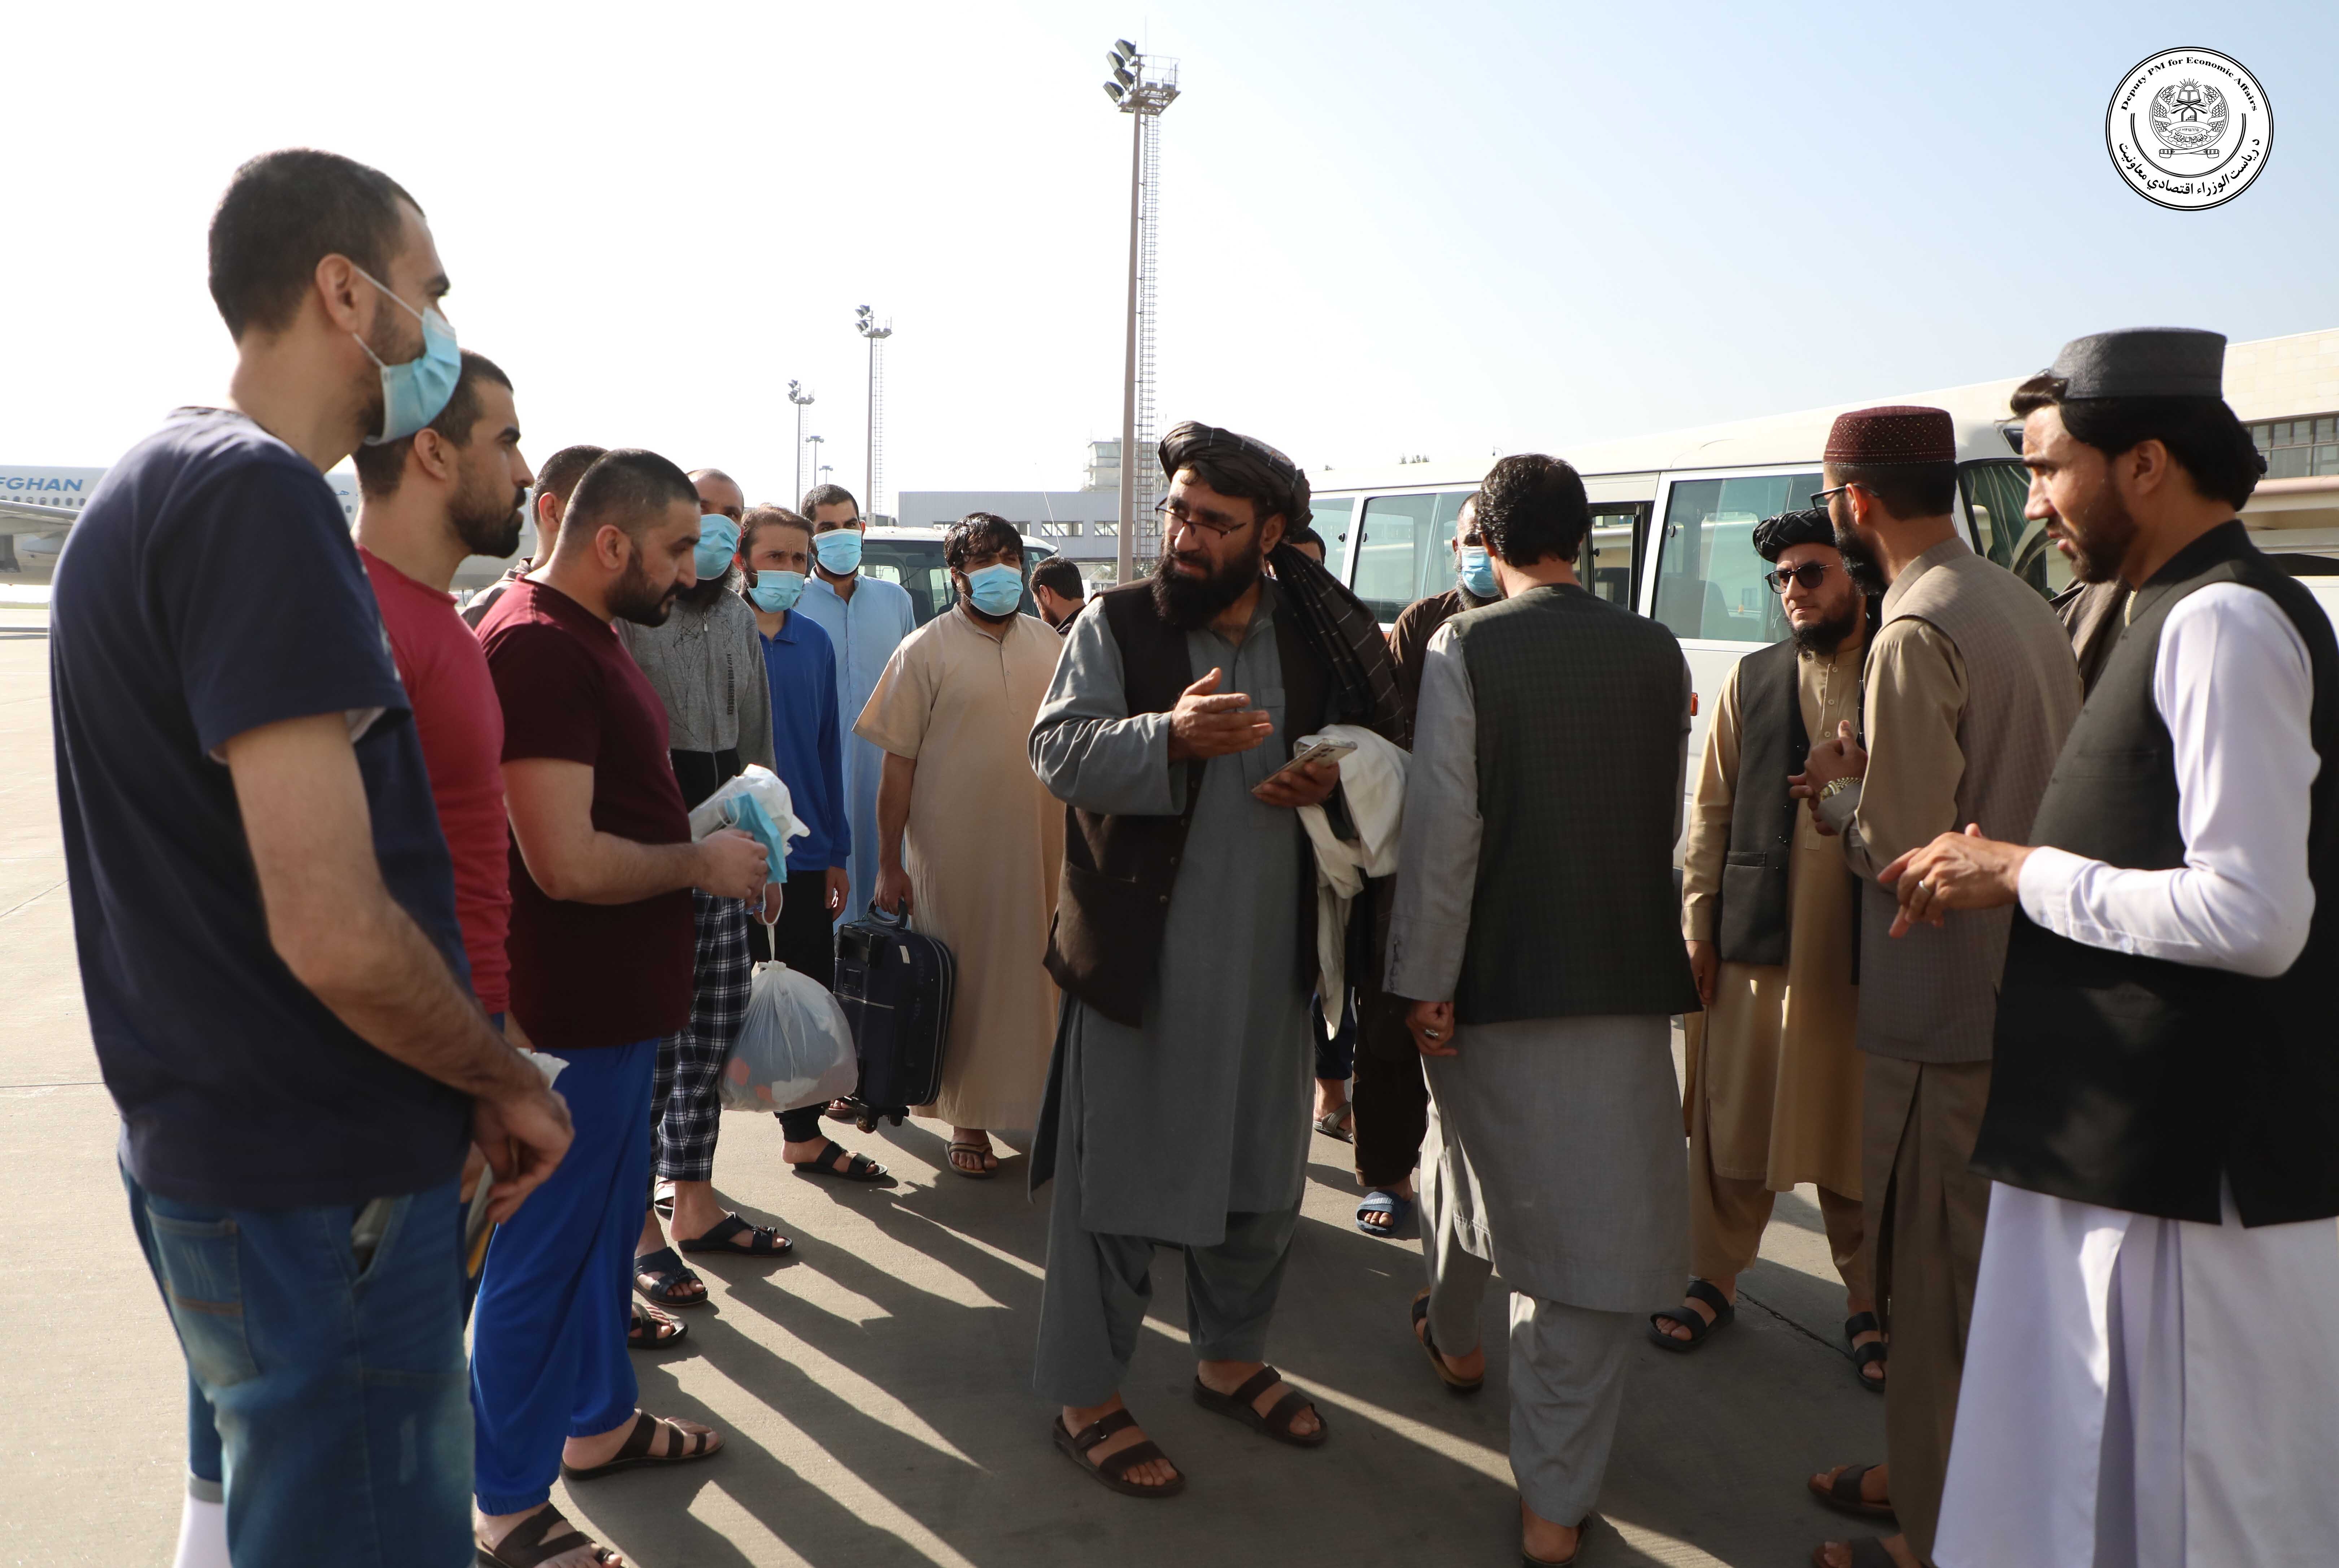 12 تن افغان از زندان امارات متحده عربی آزاد و امروز به کشور بازگشتند